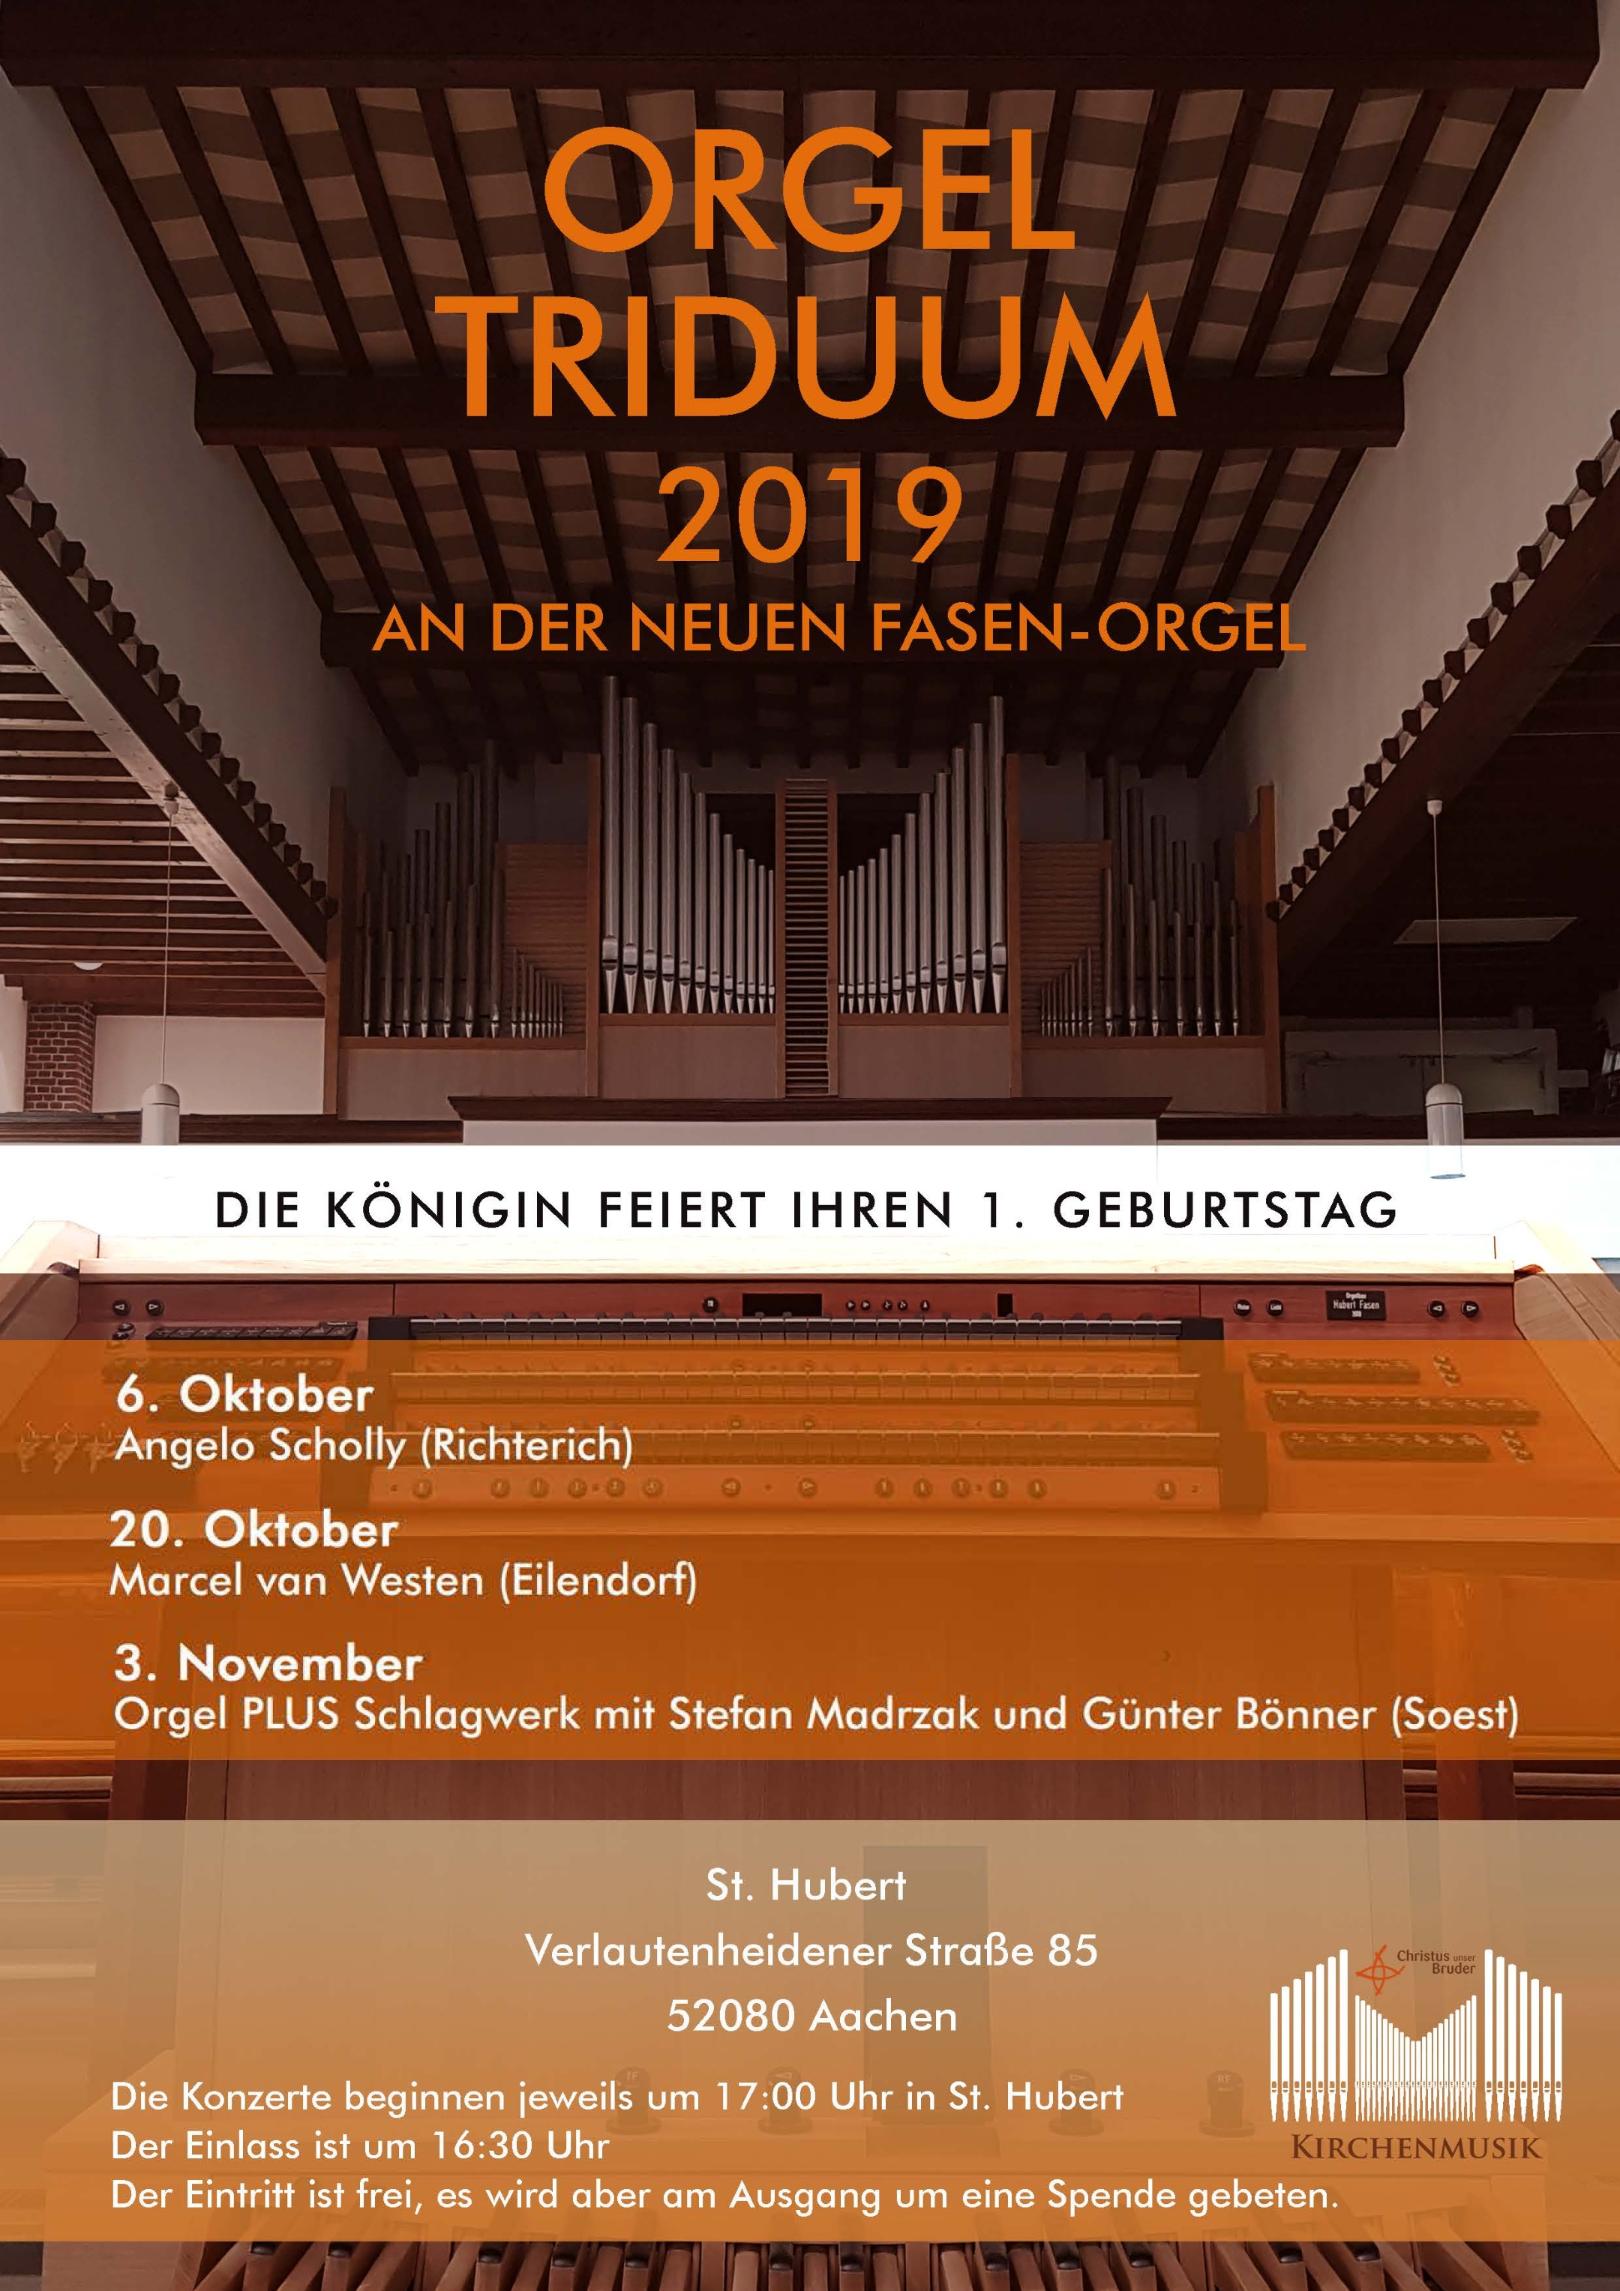 Orgel_triduum (c) Pfarre Christus Unser Bruder, Aachen, 2019